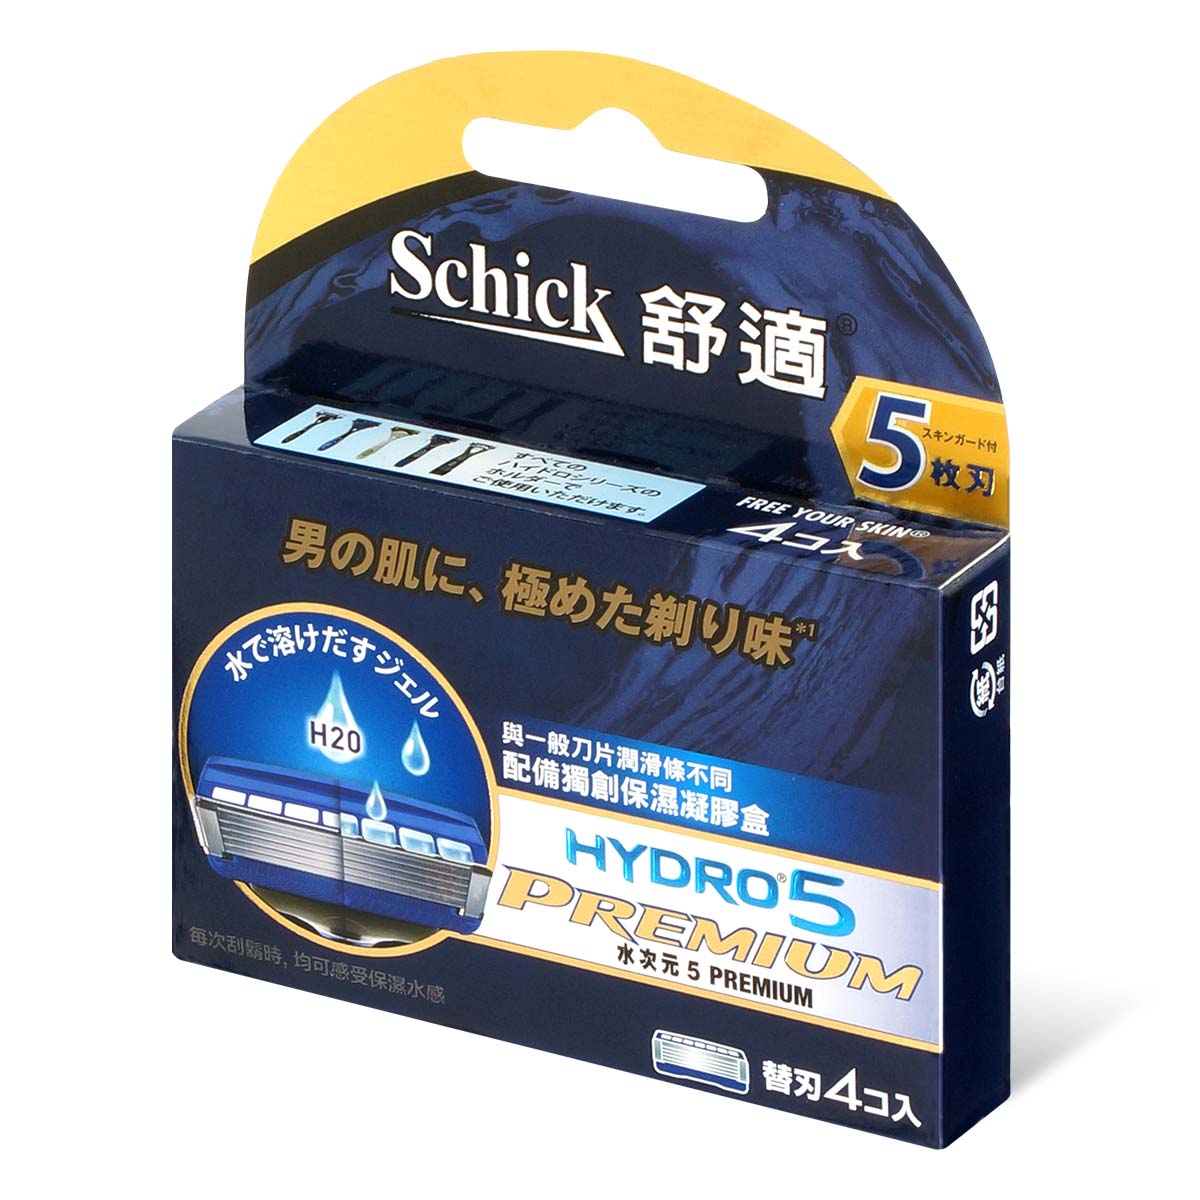 Schick Hydro5 Premium Refill 4's-p_1